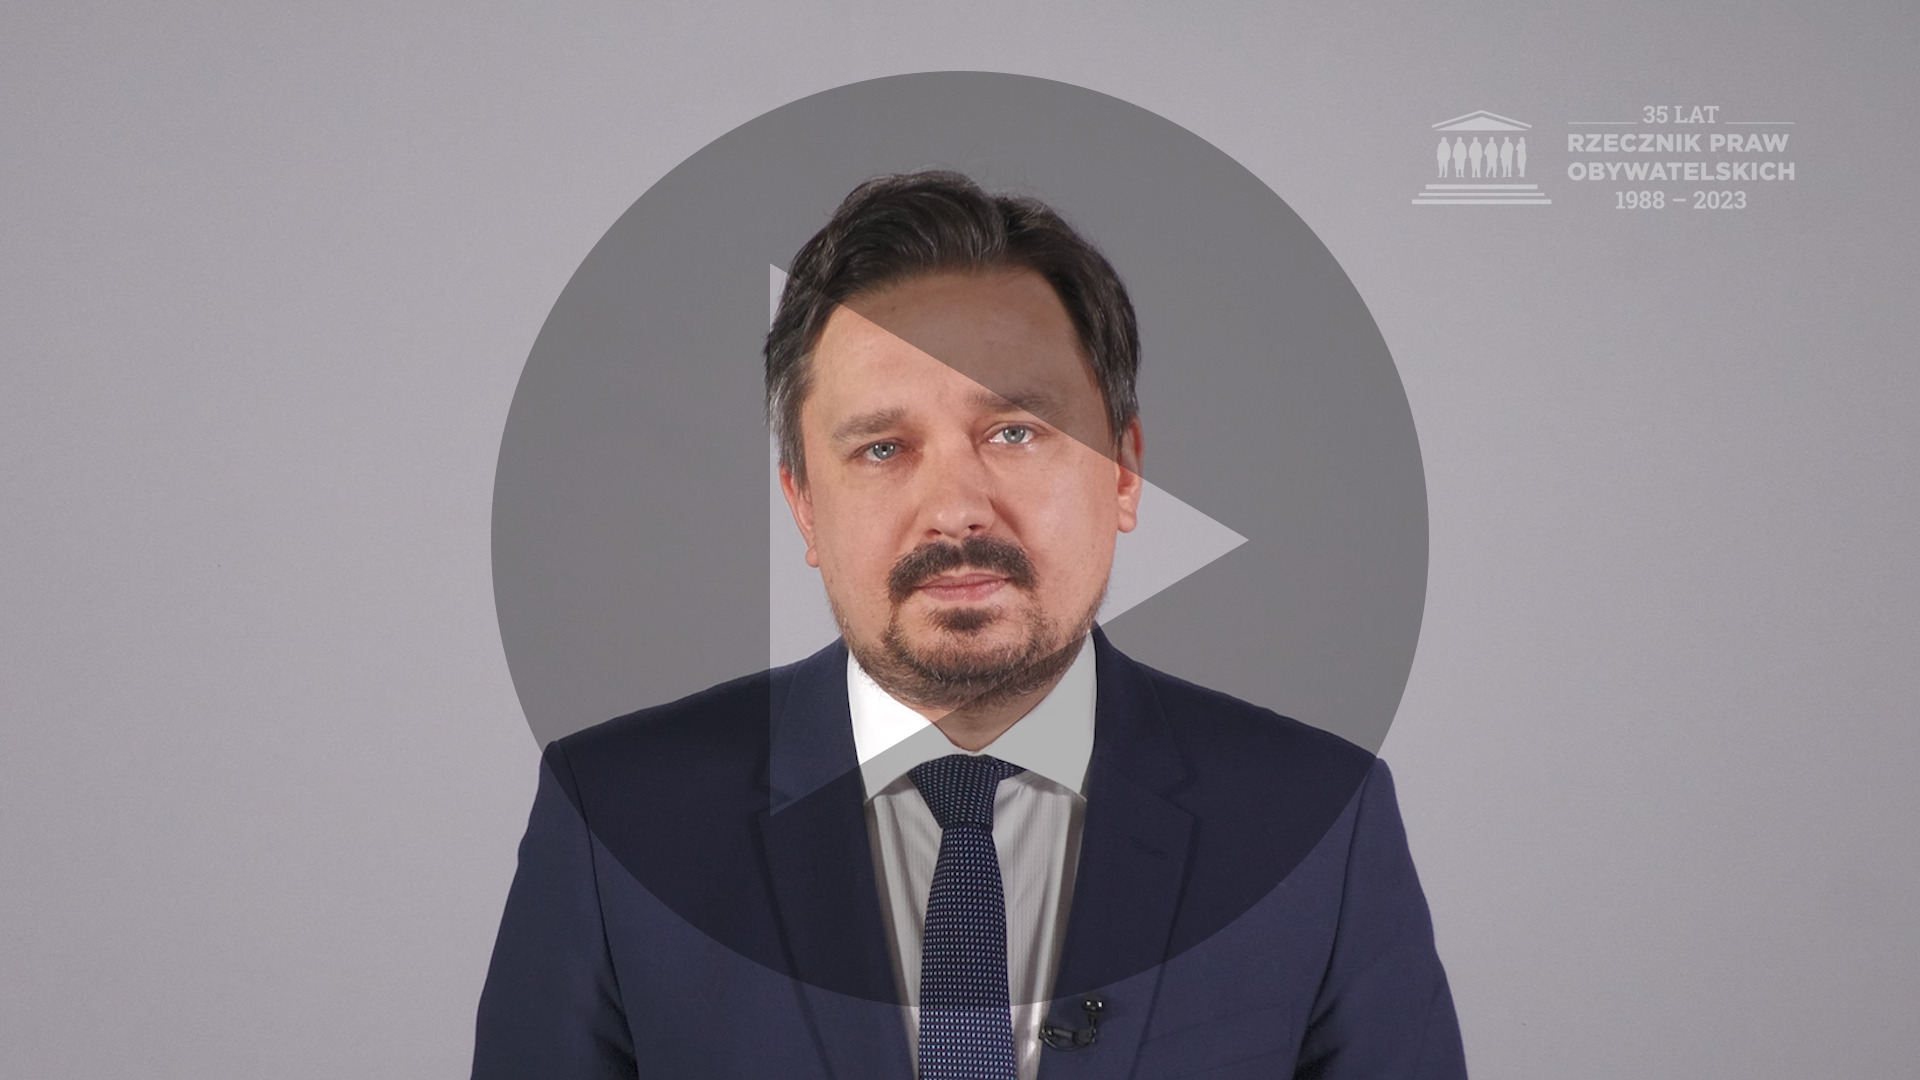 Kadr z nagrania przedstawiający RPO Marcina Wiącka z naniesionym symbolem odtwarzania wideo - trójkątem w kole